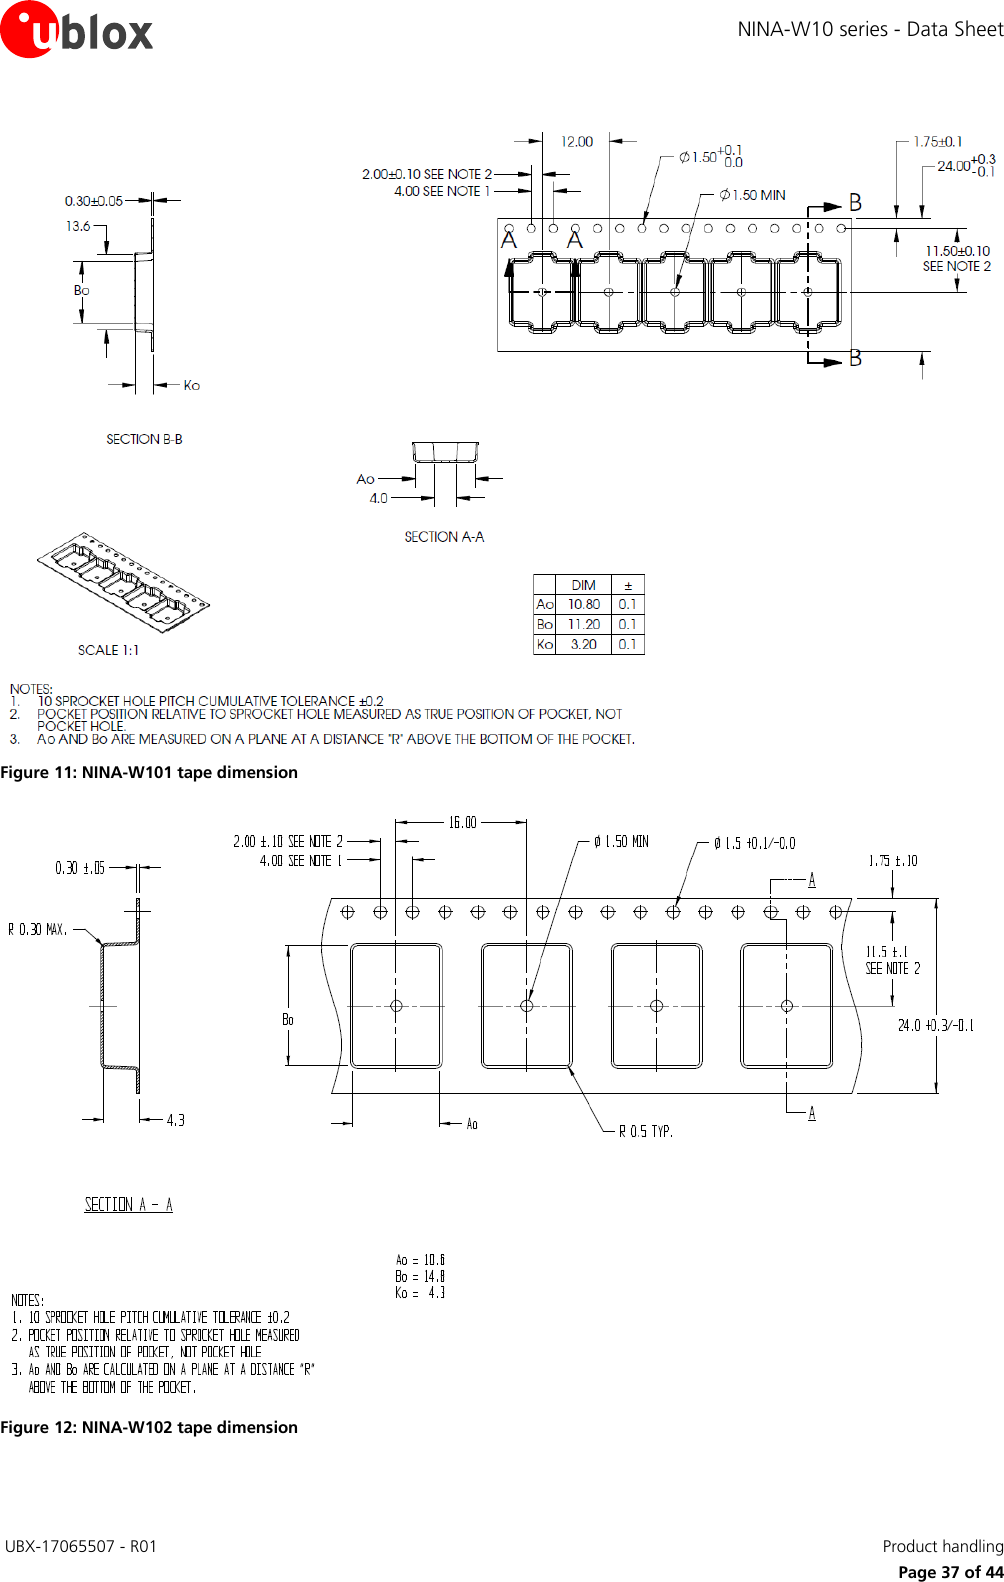 Page 37 of u blox NINAW10 Wireless Communication System Module User Manual NINA W10 series